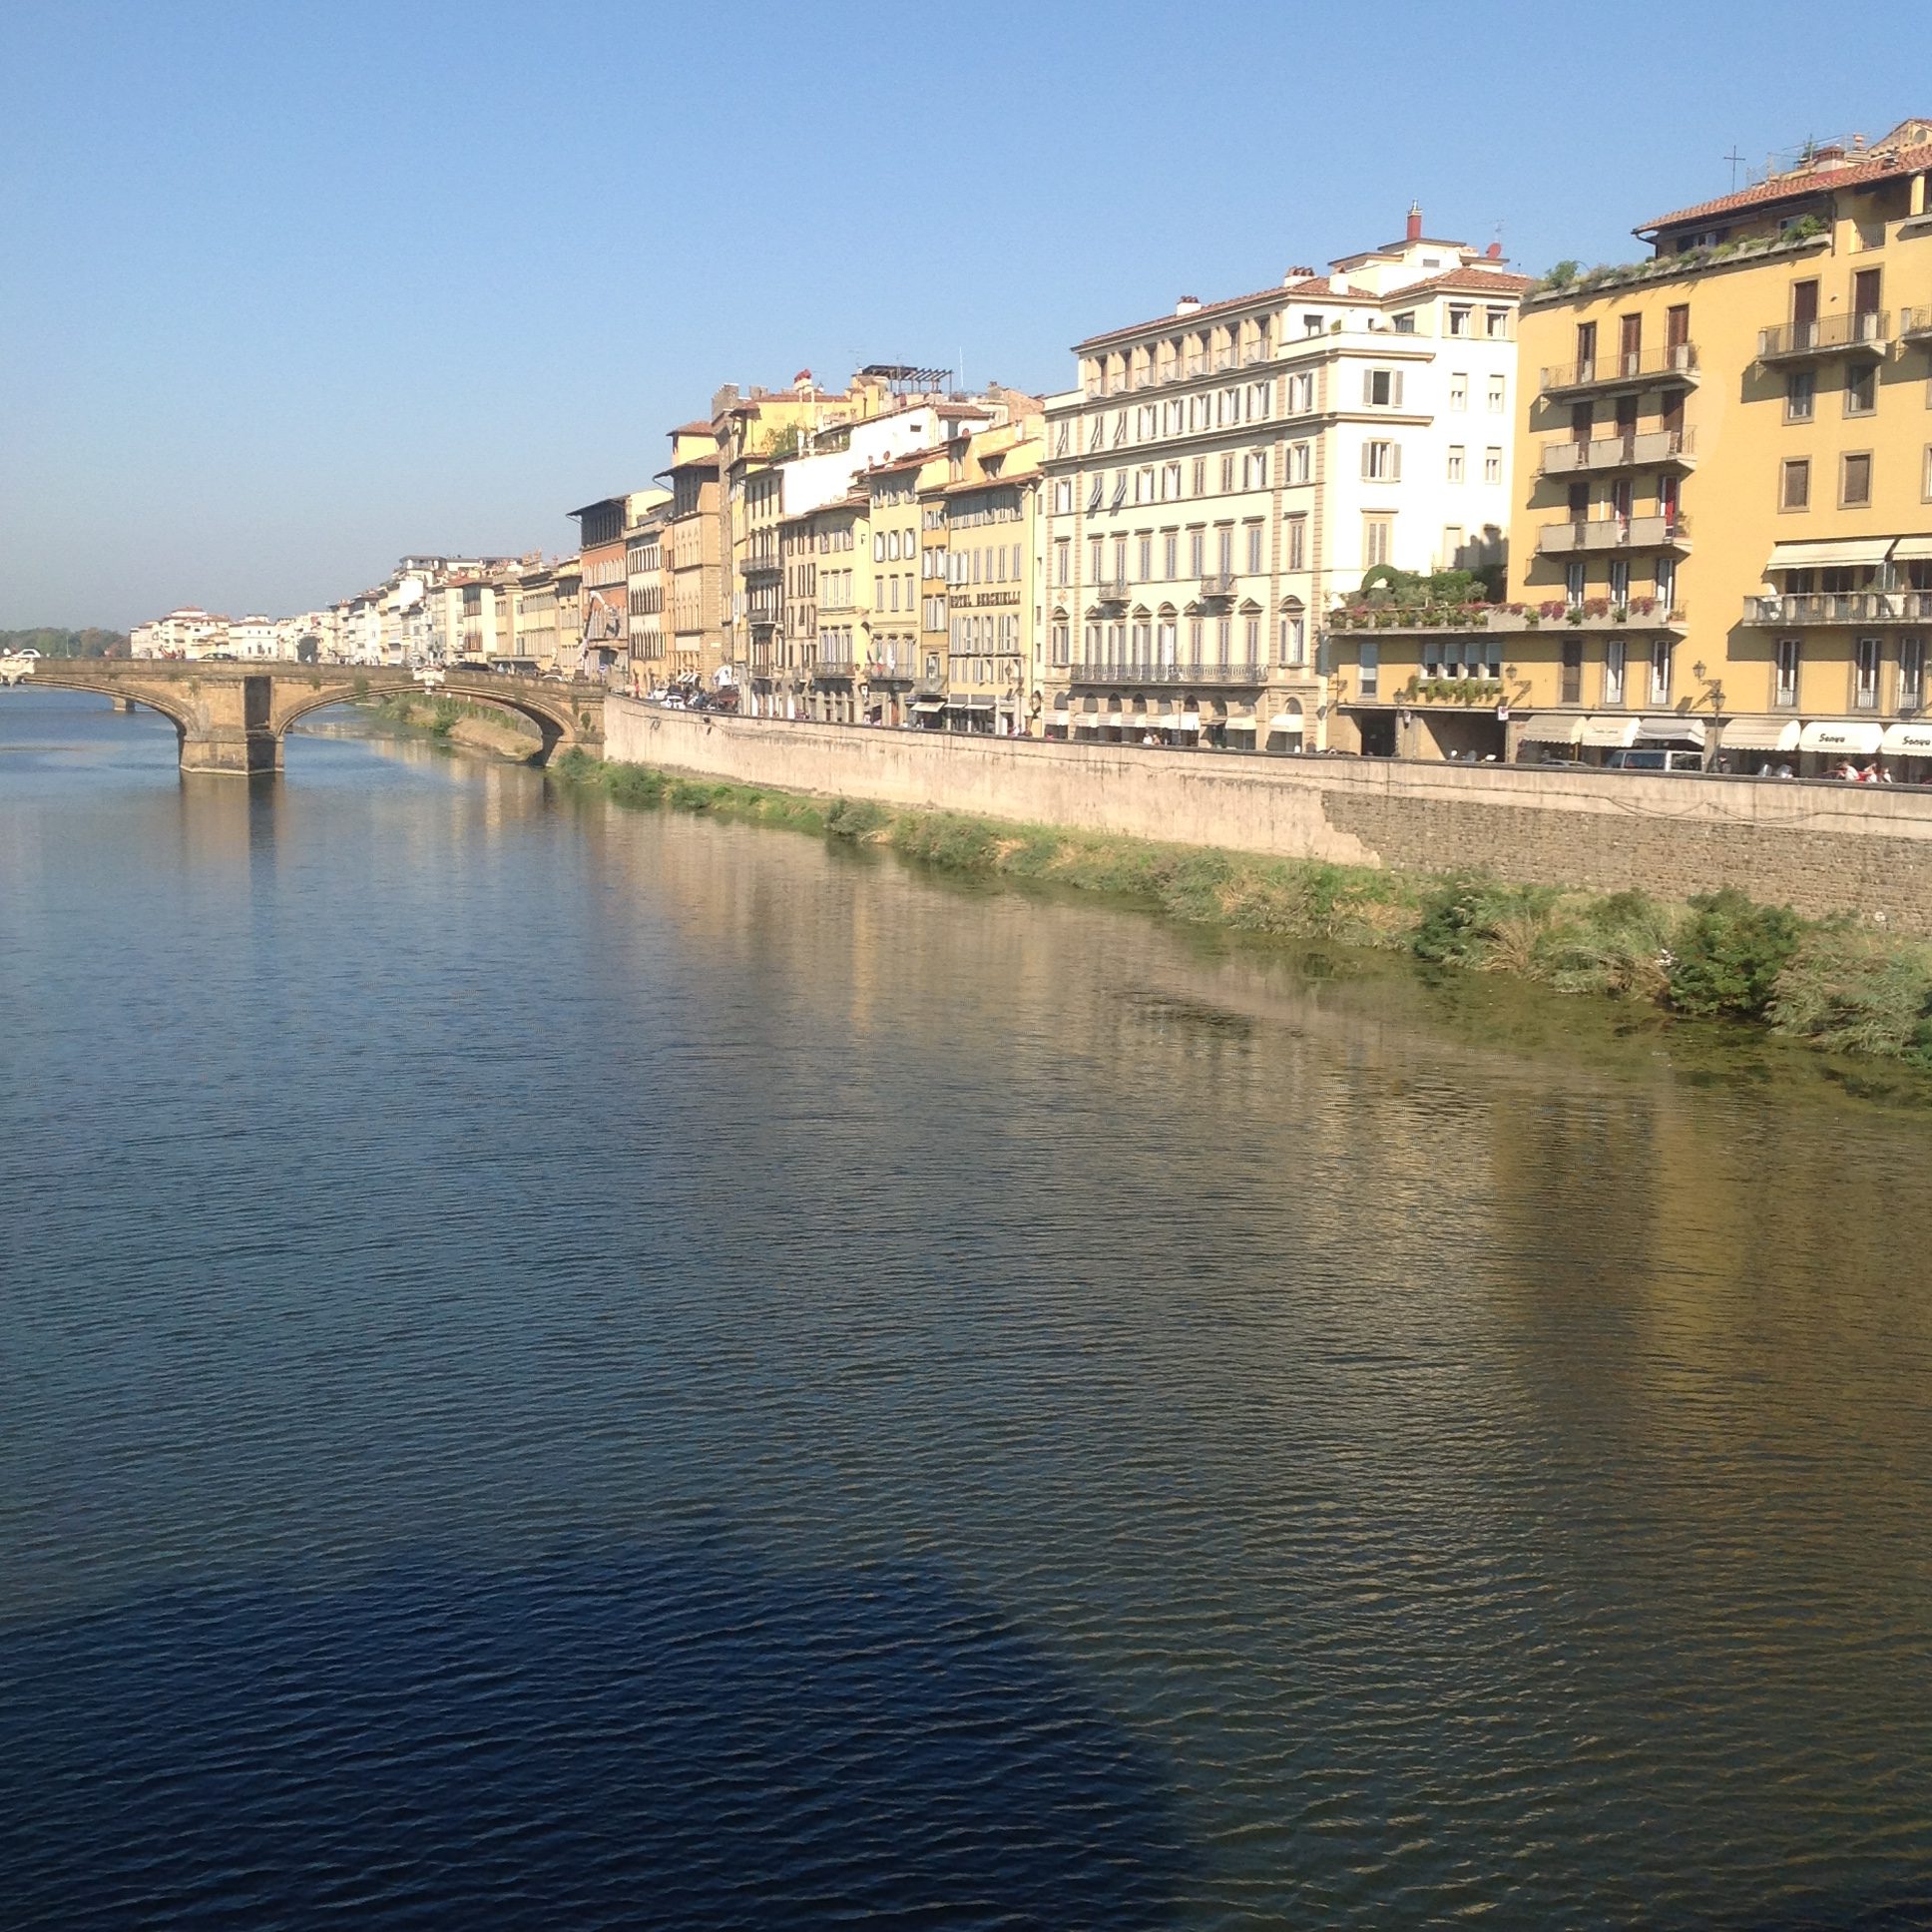 along the Arno